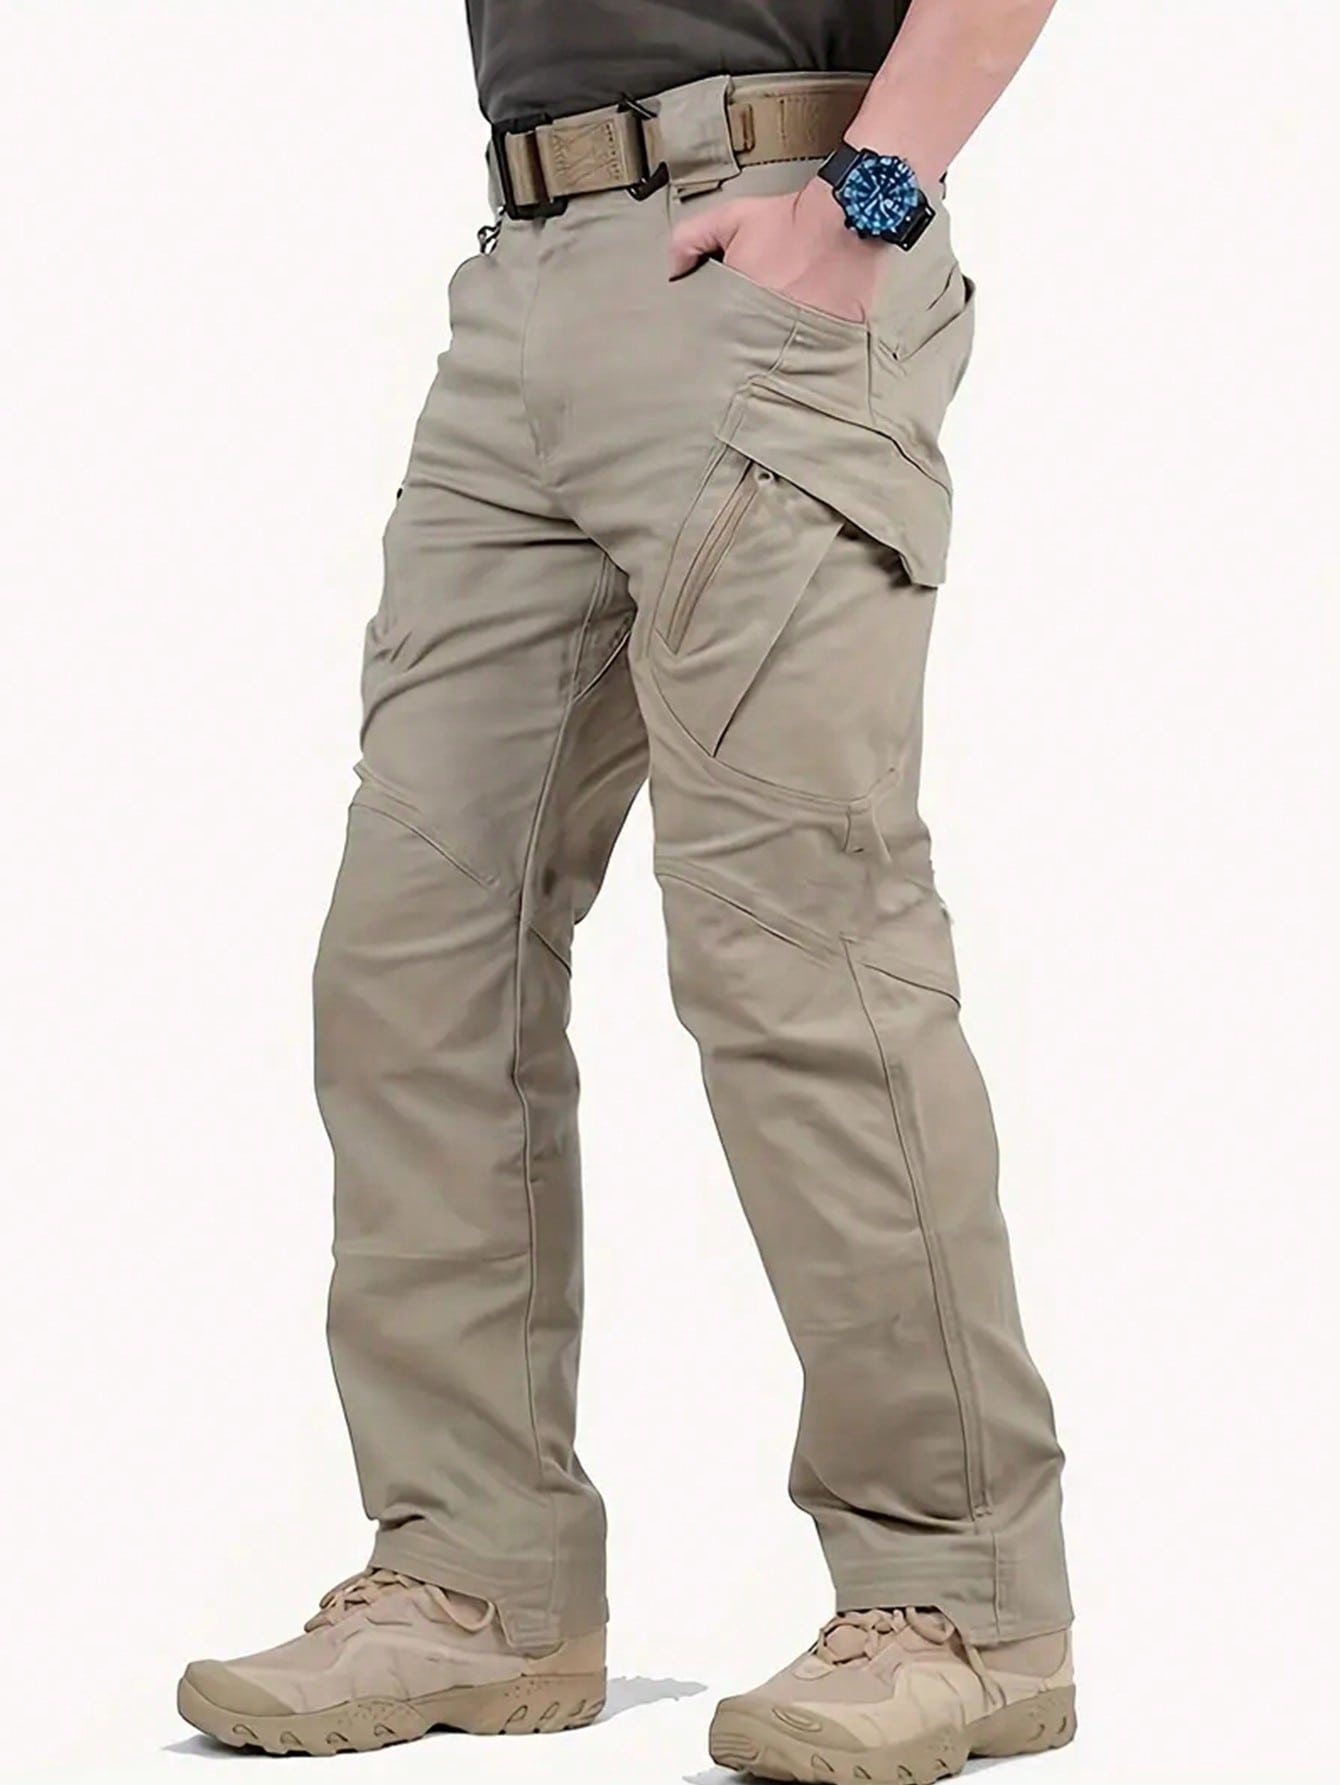 Мужские брюки спецодежды с застежкой-молнией, хаки